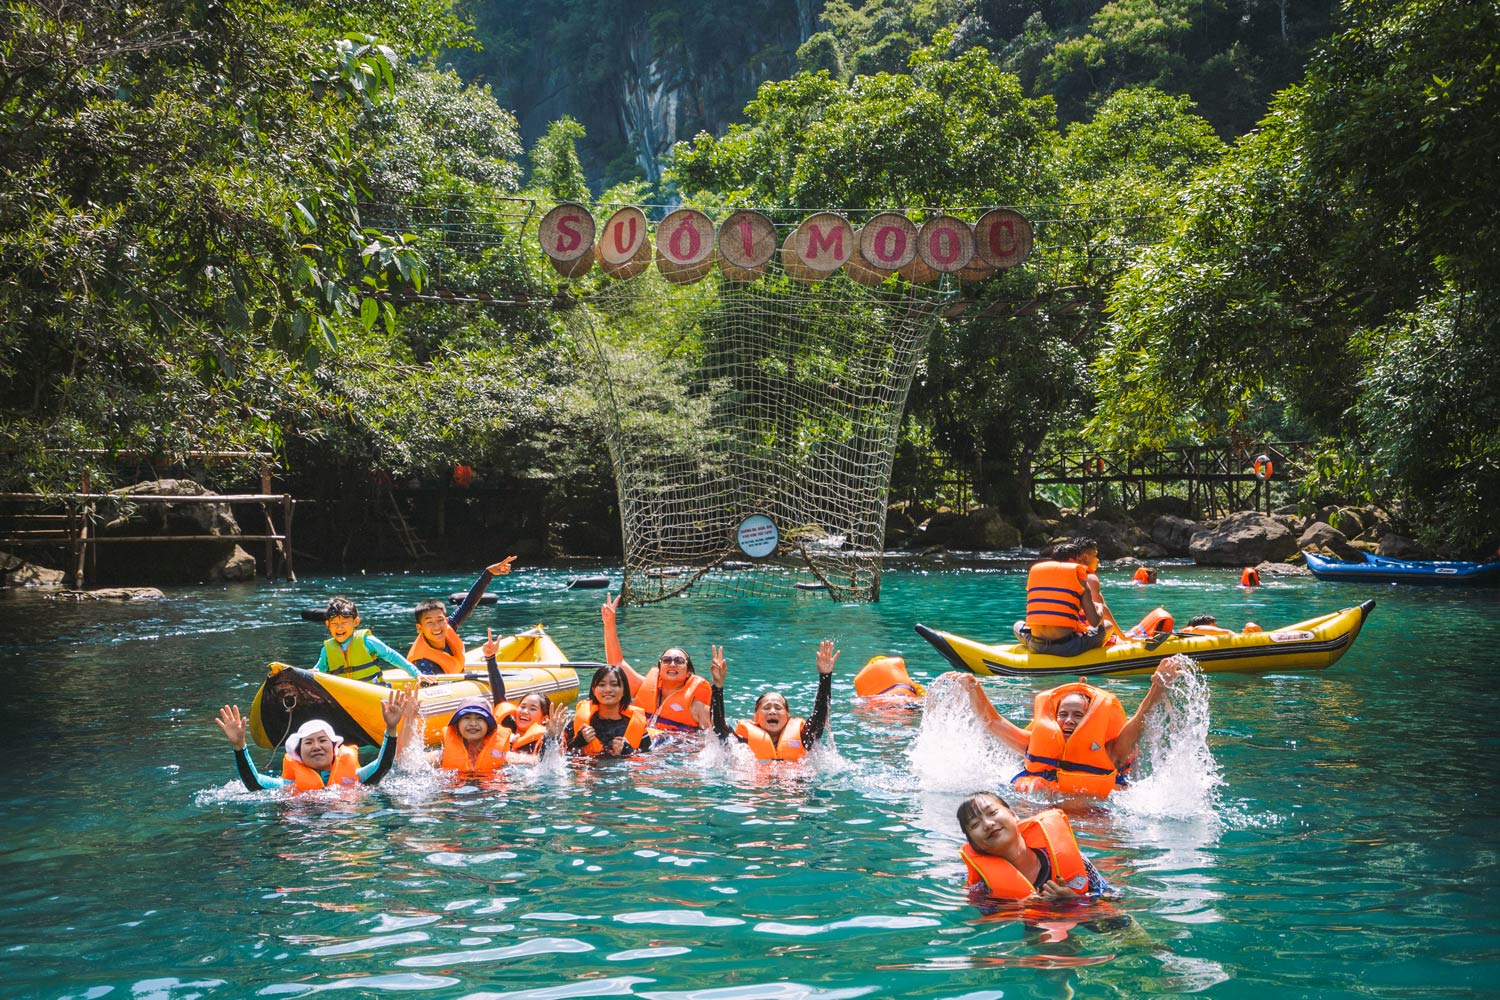 Du khách có thể tham gia các trò chơi dưới nước tại suối nước Moọc.